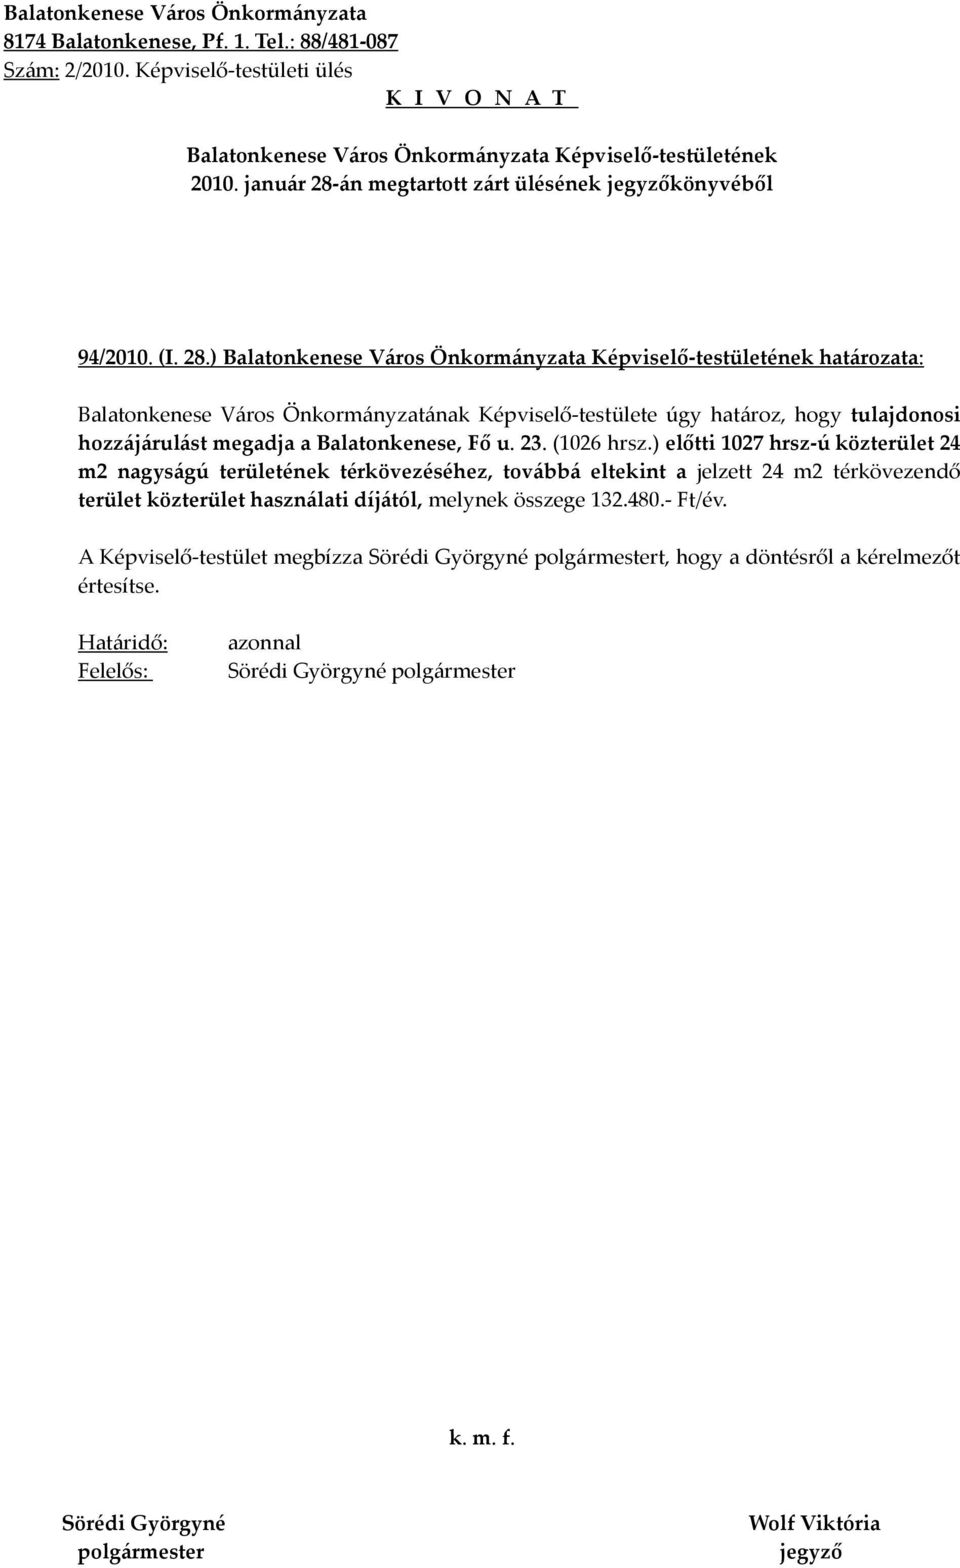 ) határozata: Balatonkenese Város Önkormányzatának Képviselő-testülete úgy határoz, hogy tulajdonosi hozzájárulást megadja a